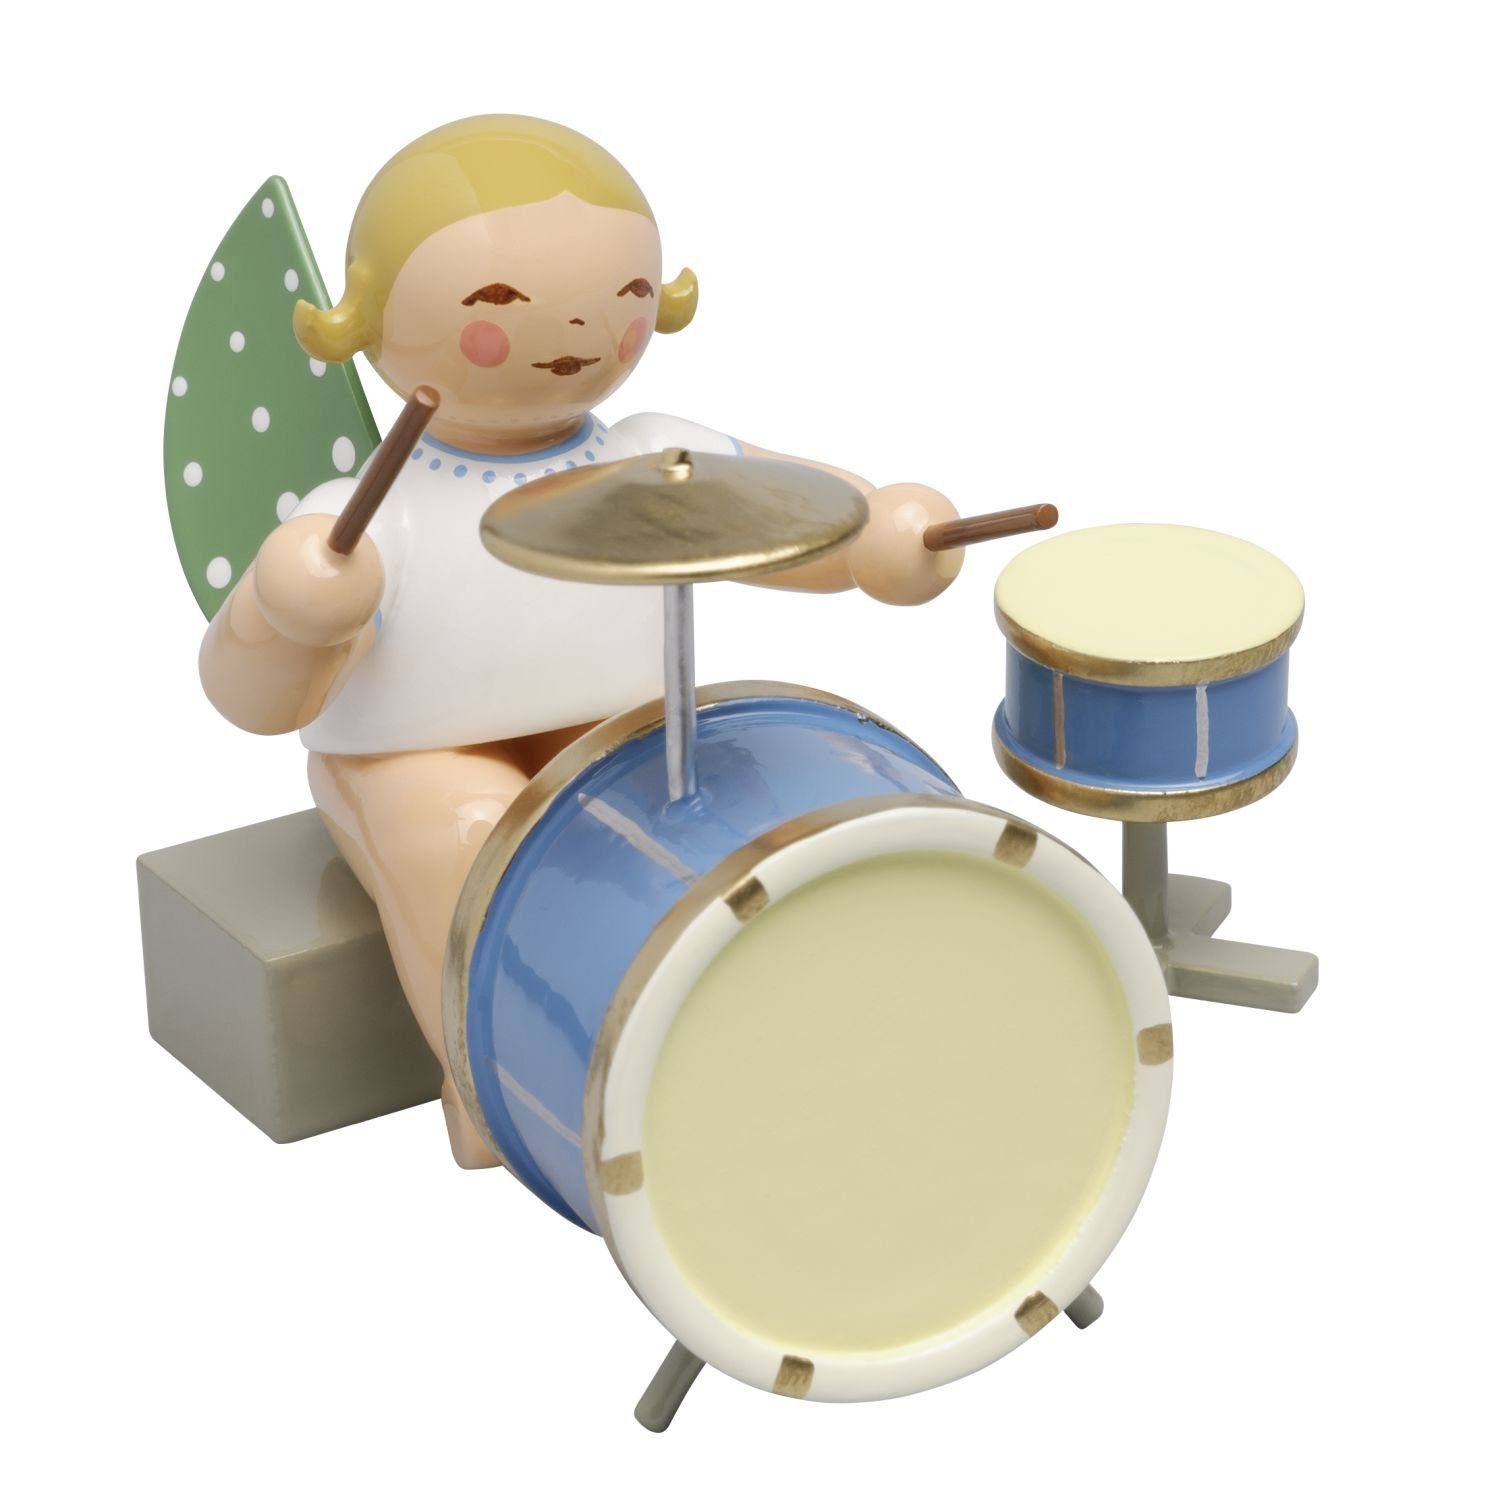 Wendt & Kühn Weihnachtsfigur Engel mit Zweiteiligem Schlagzeug Sitzend 650/44a, Haarfarbe zufällig blond oder braunhaarig